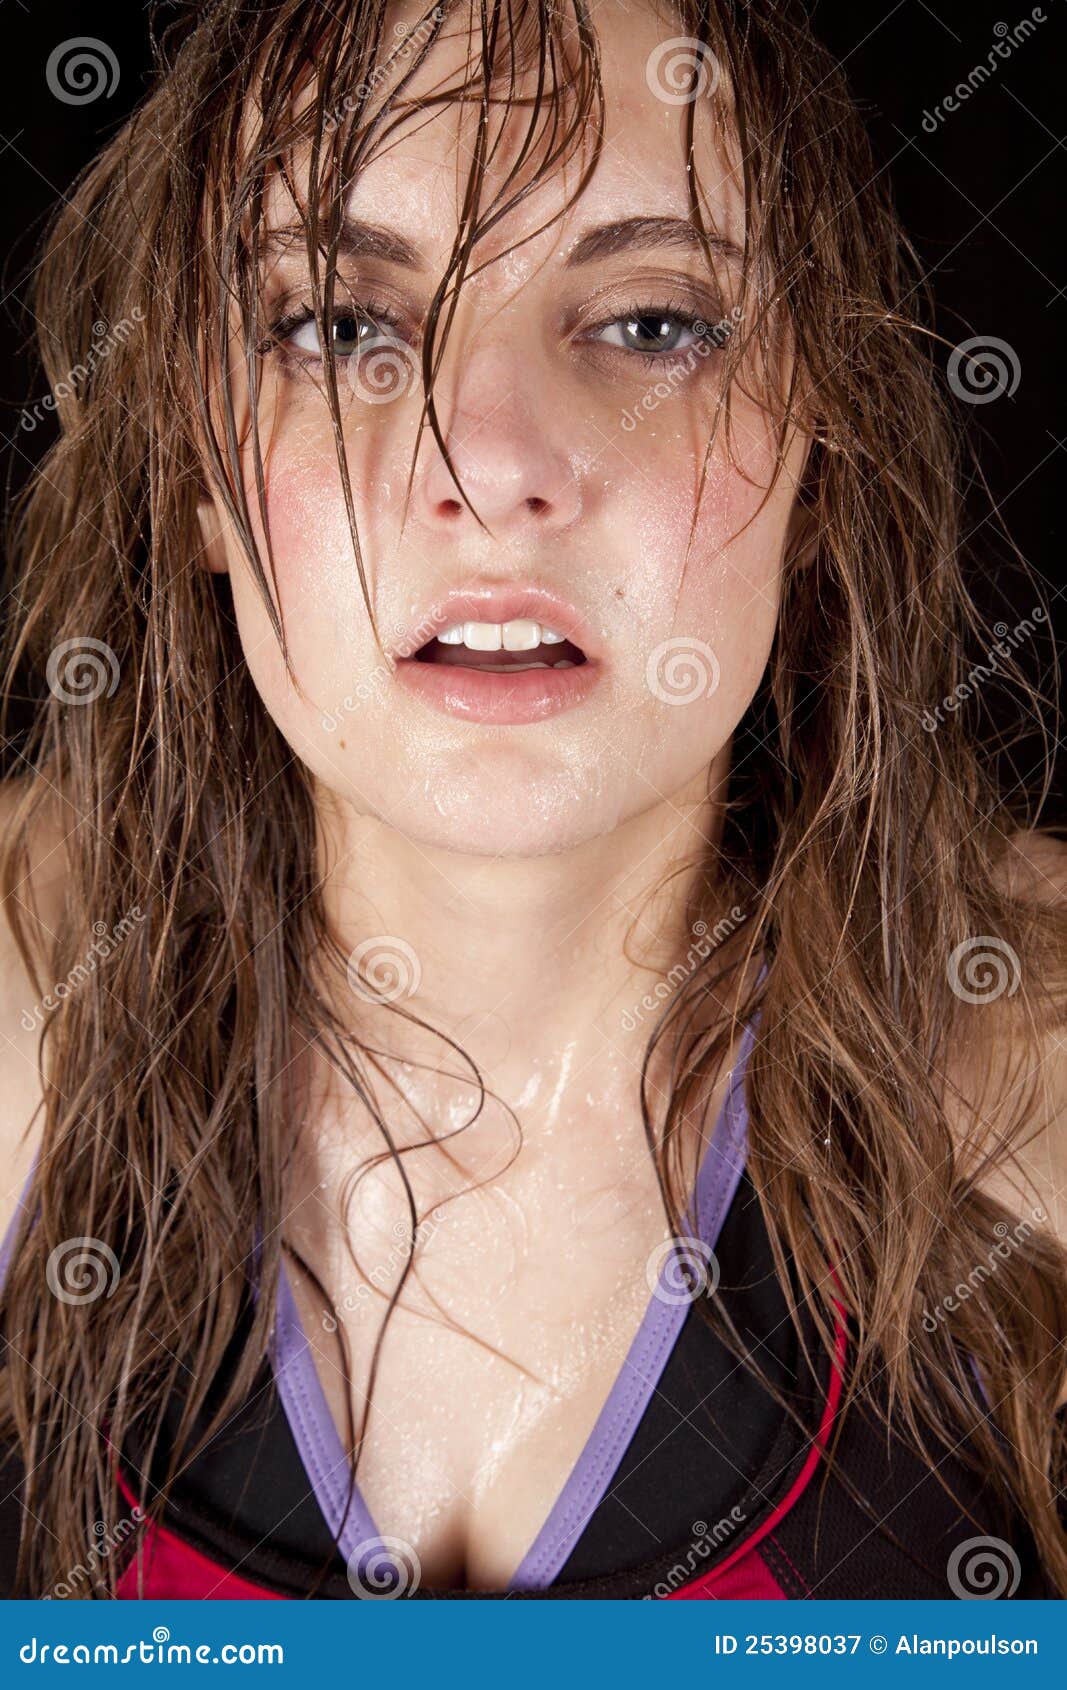 女生流汗水的图片,女生挂盐水的图片(5) - 伤感说说吧